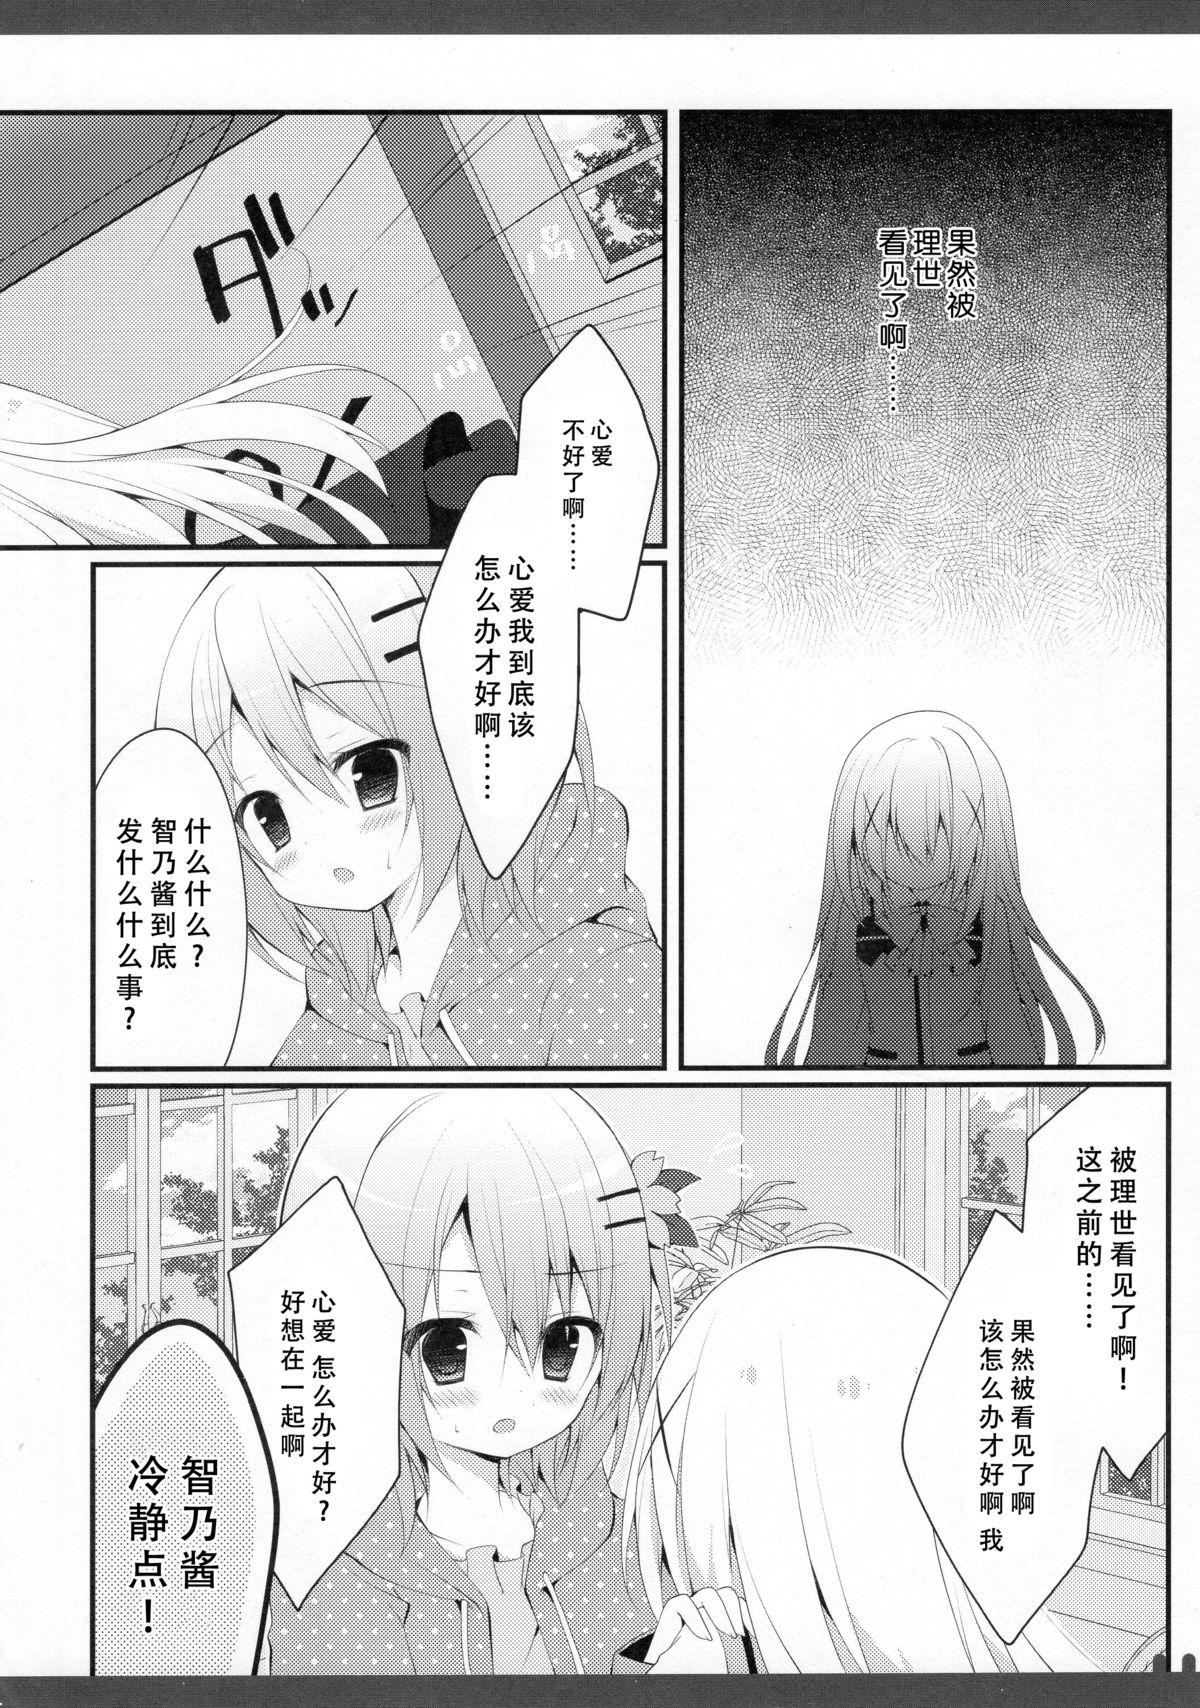 Breast Futari no Himitsu 3 - Gochuumon wa usagi desu ka Teen Hardcore - Page 6